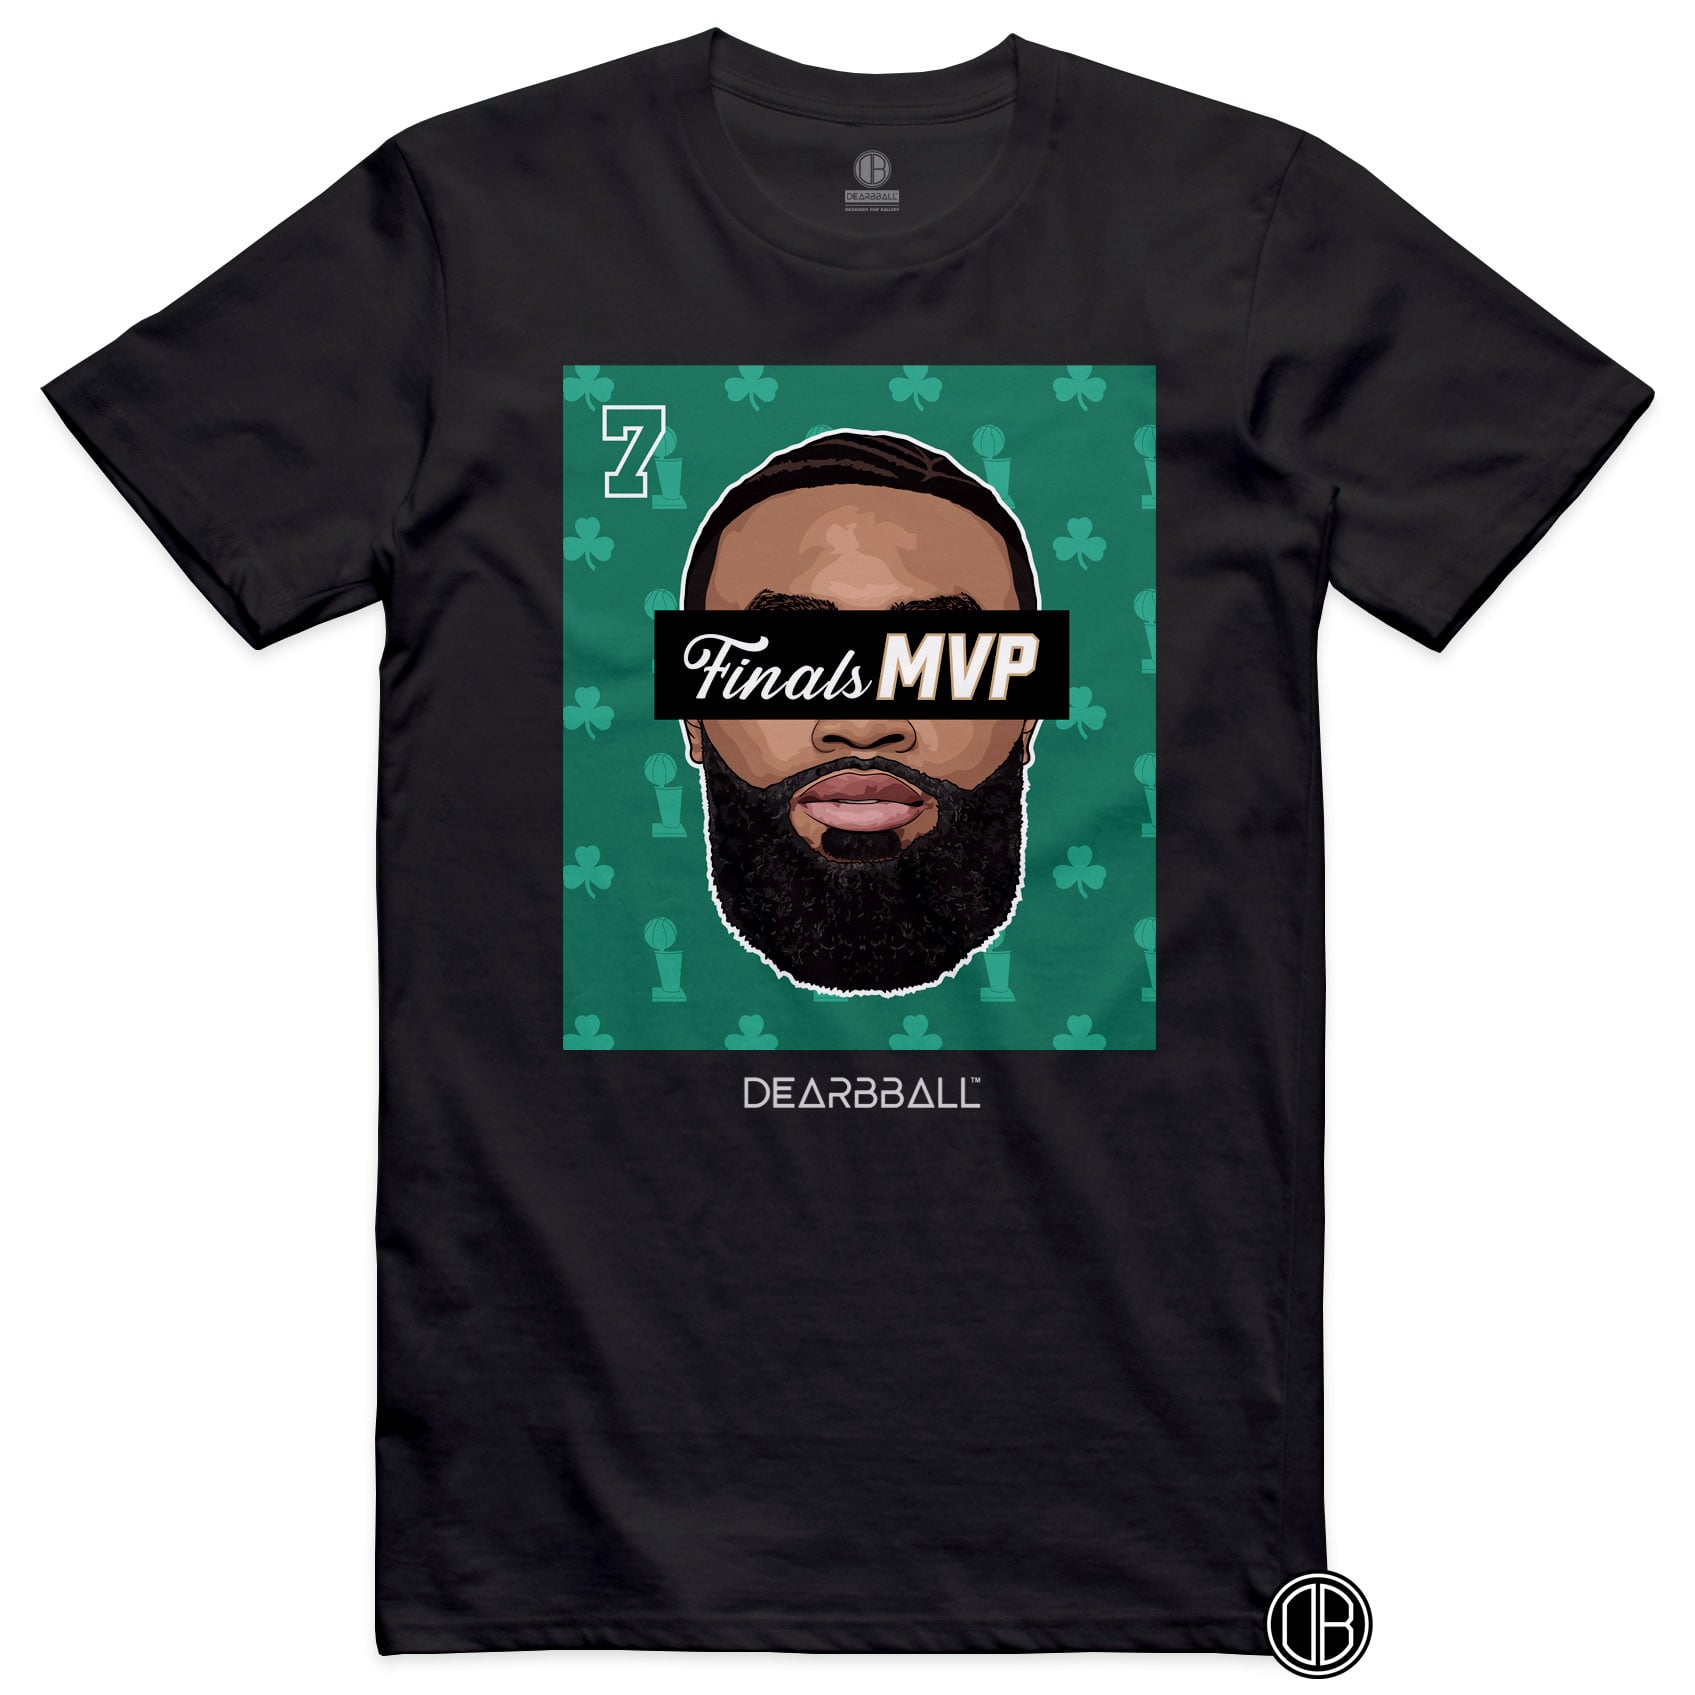 DearBBall T-Shirt - JB Finals MVP Edition